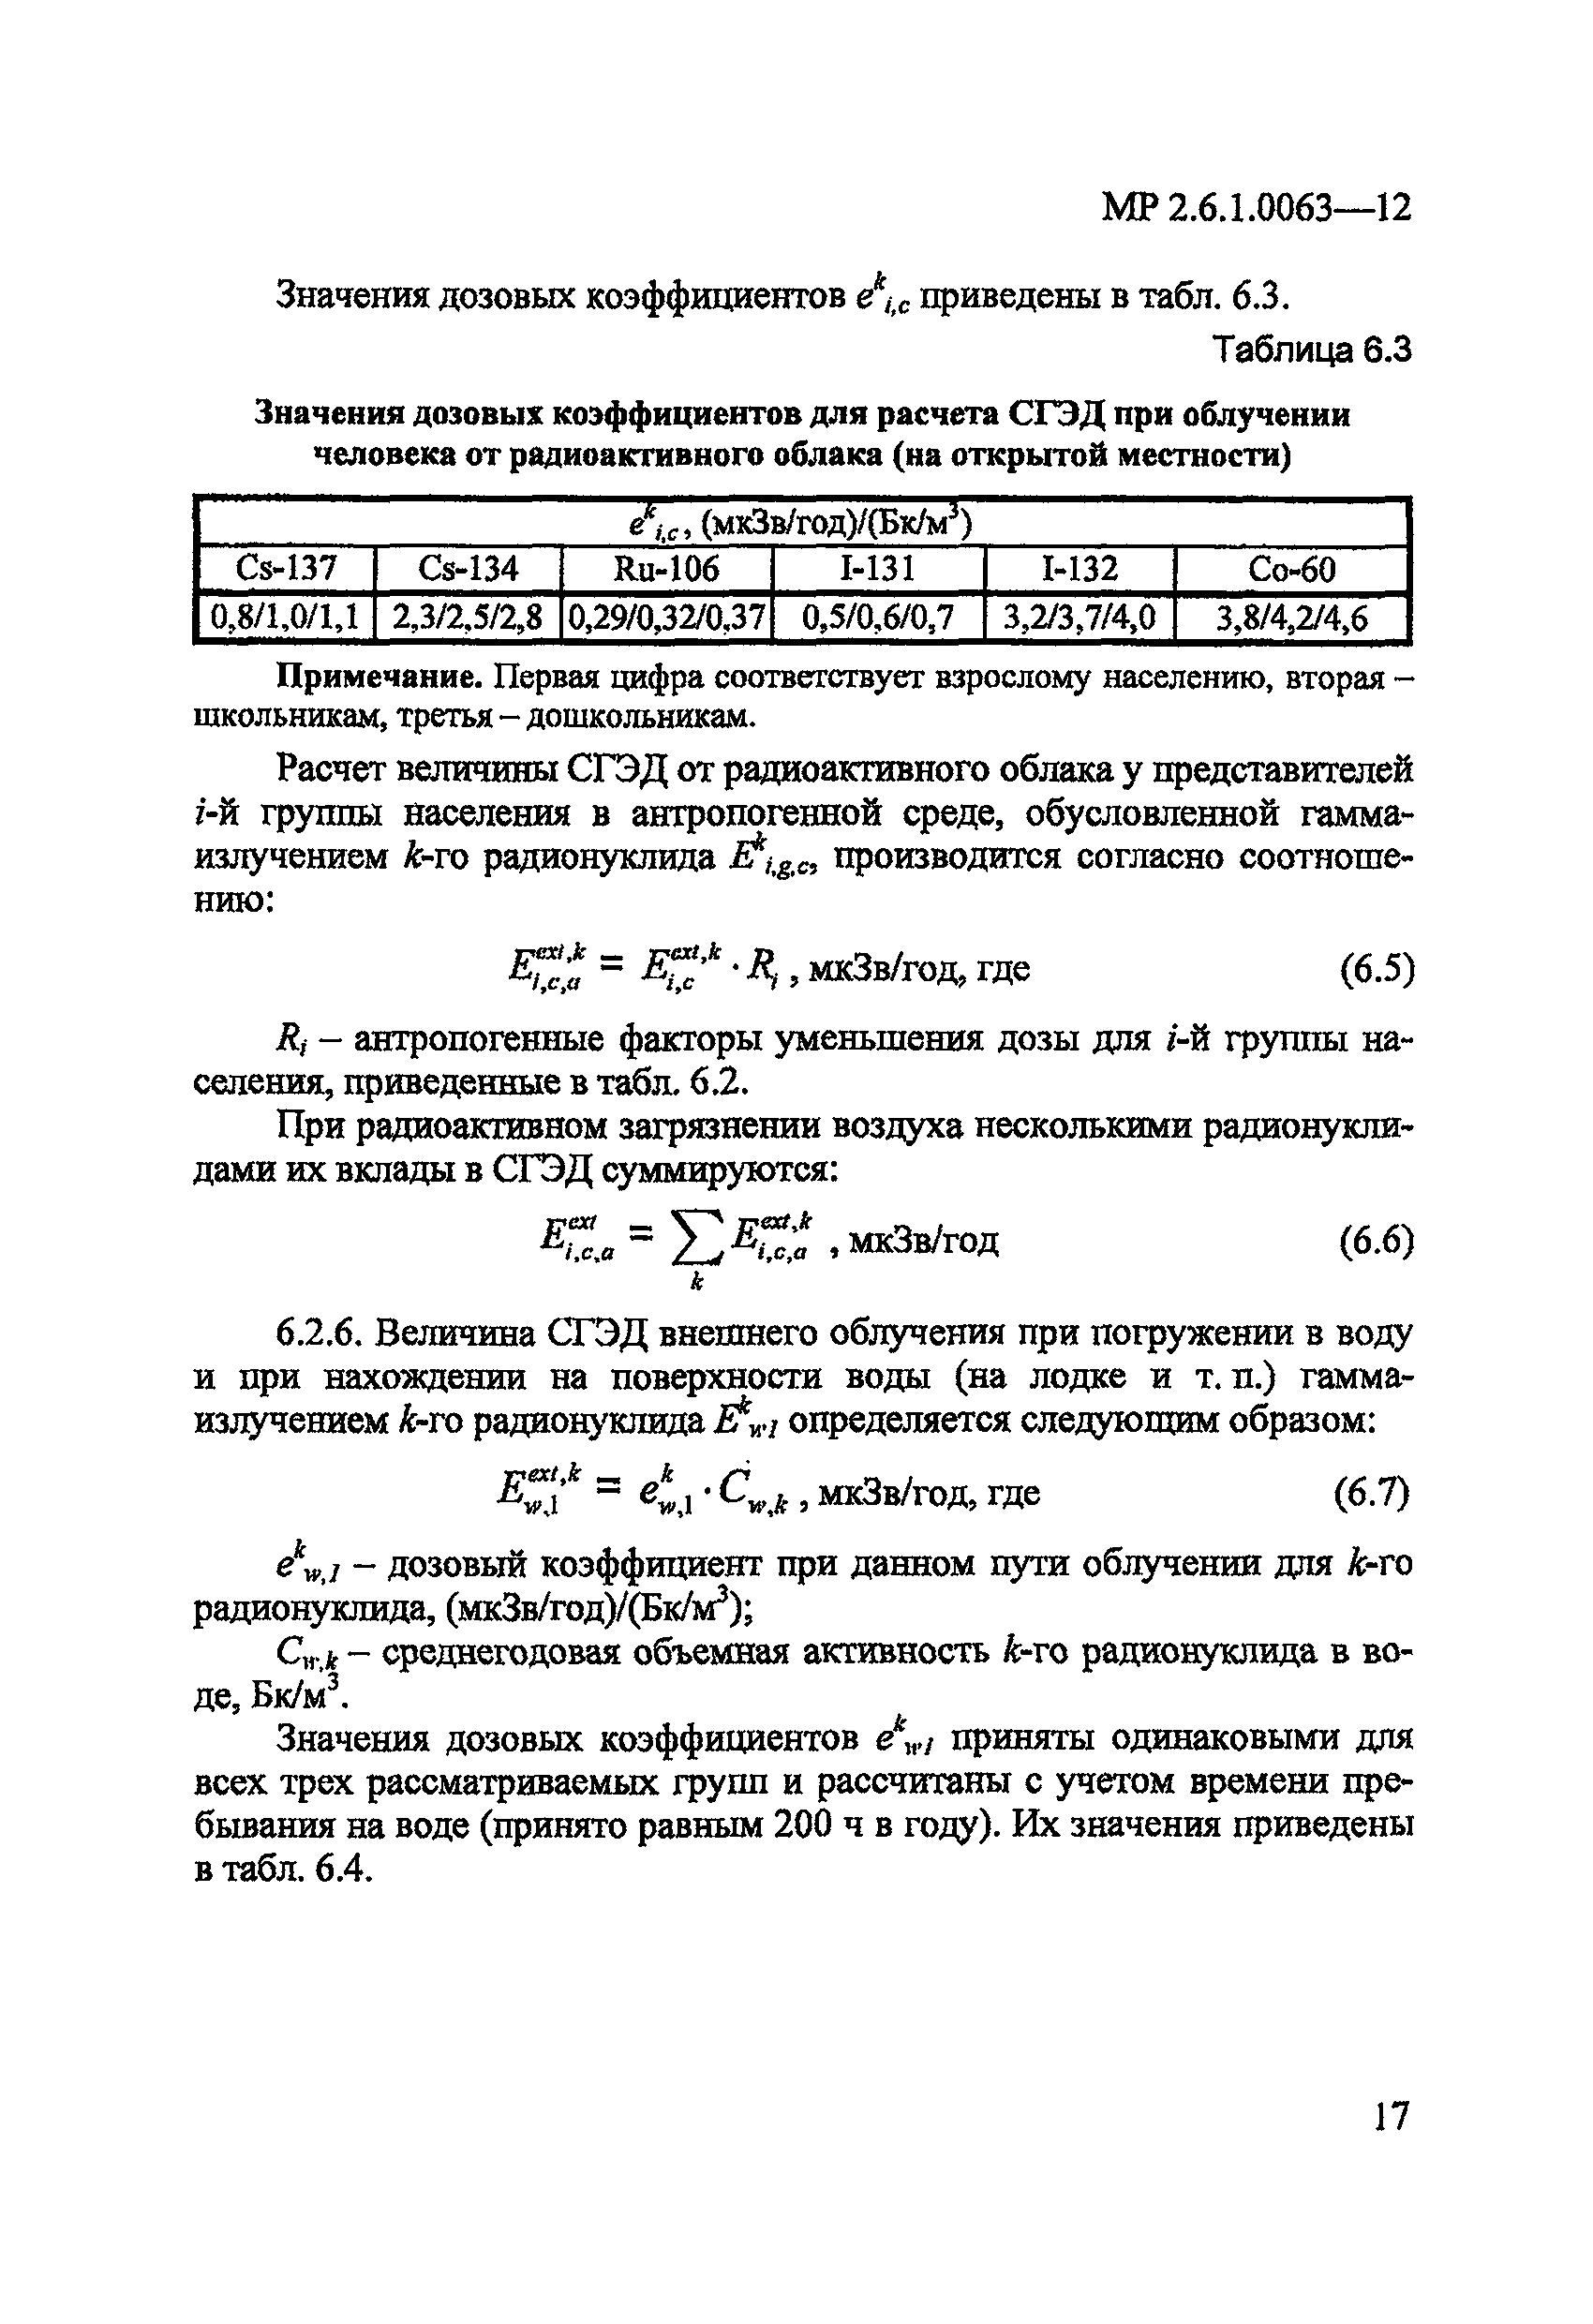 МР 2.6.1.0063-12